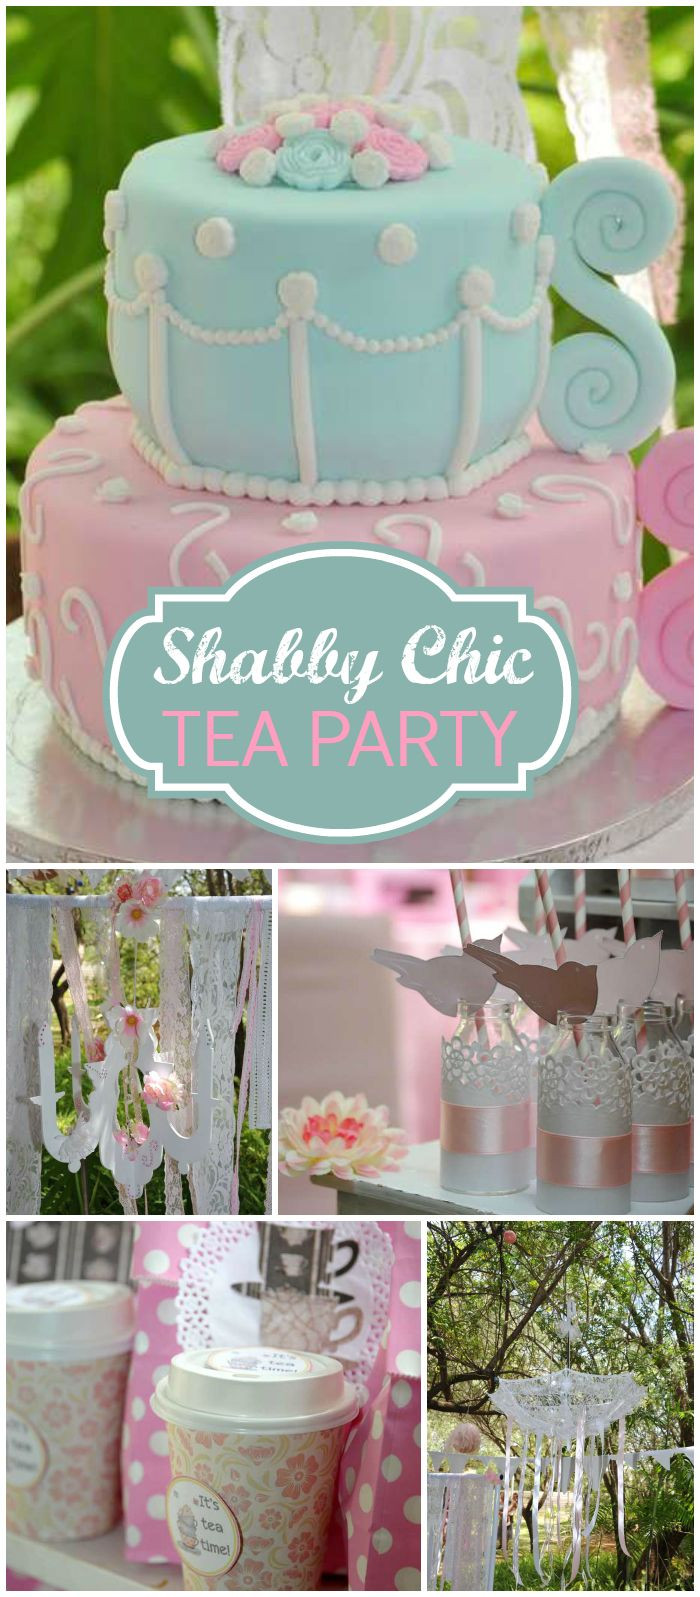 Shabby Chic Tea Party Ideas
 Vintage High Tea Birthday "Vintage High Tea Birthday